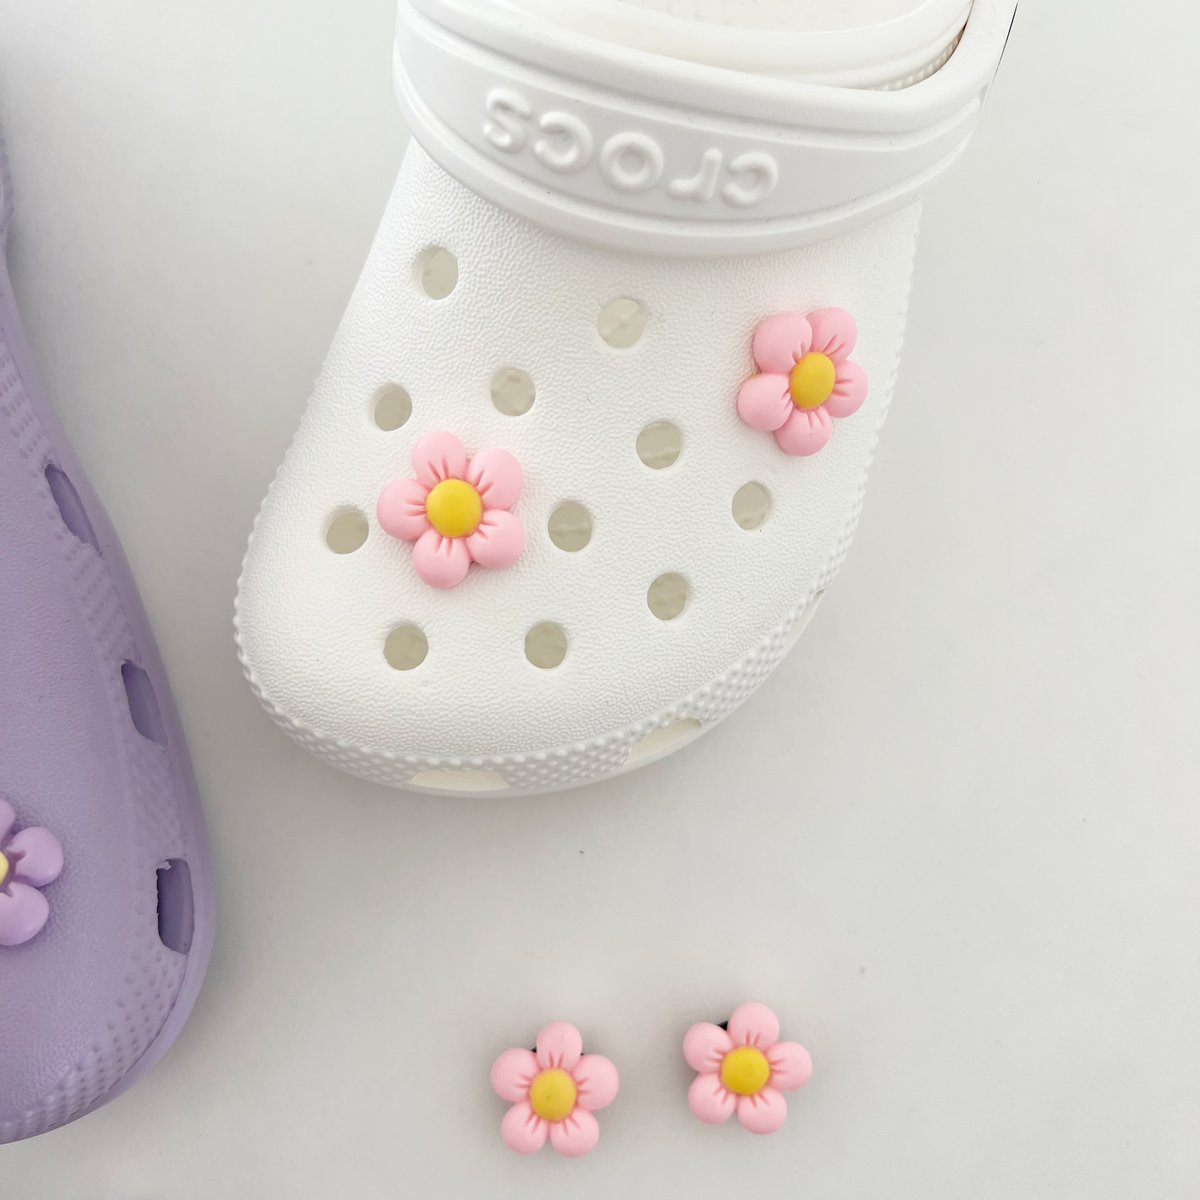 Light Purple Sparkly Crocs Charms, Flower Shoe Charms, Floral Croc